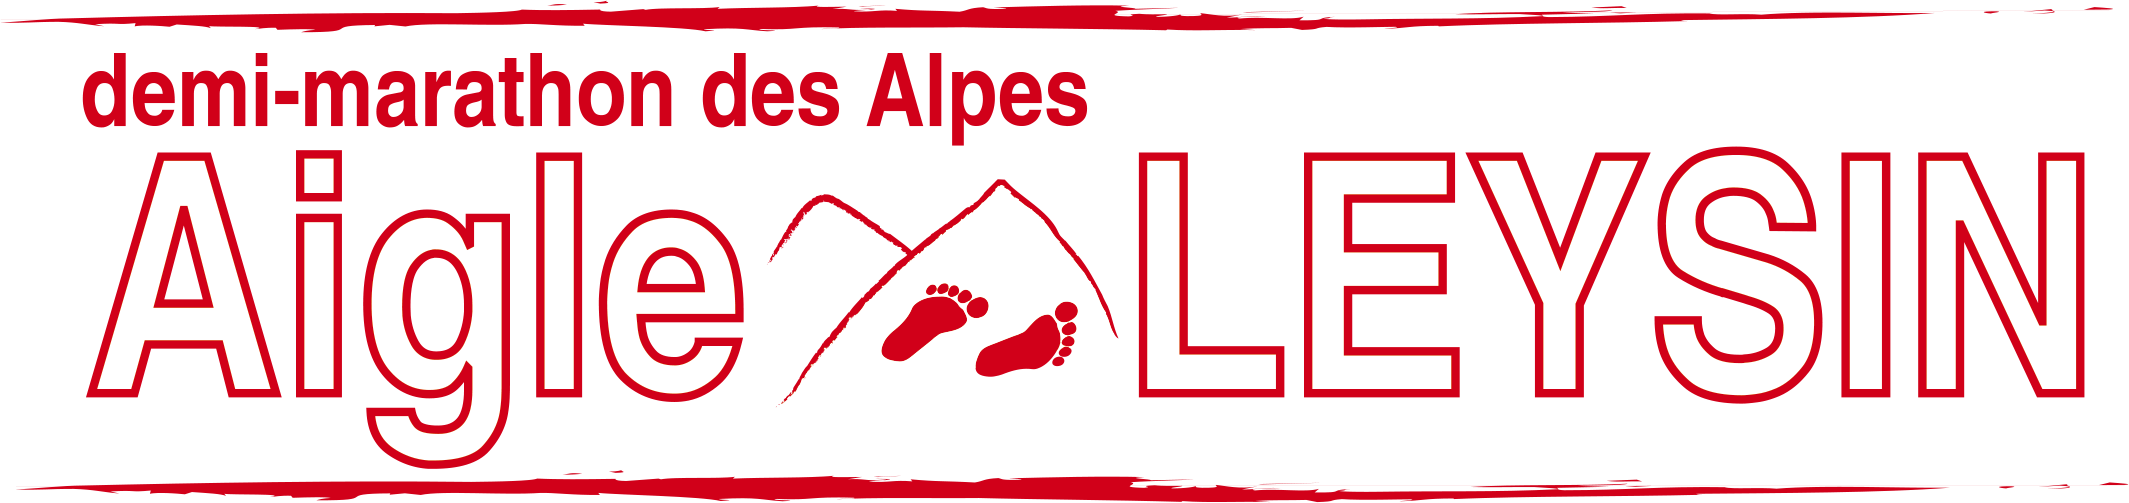 32. Demi-marathon des Alpes Aigle-Leysin